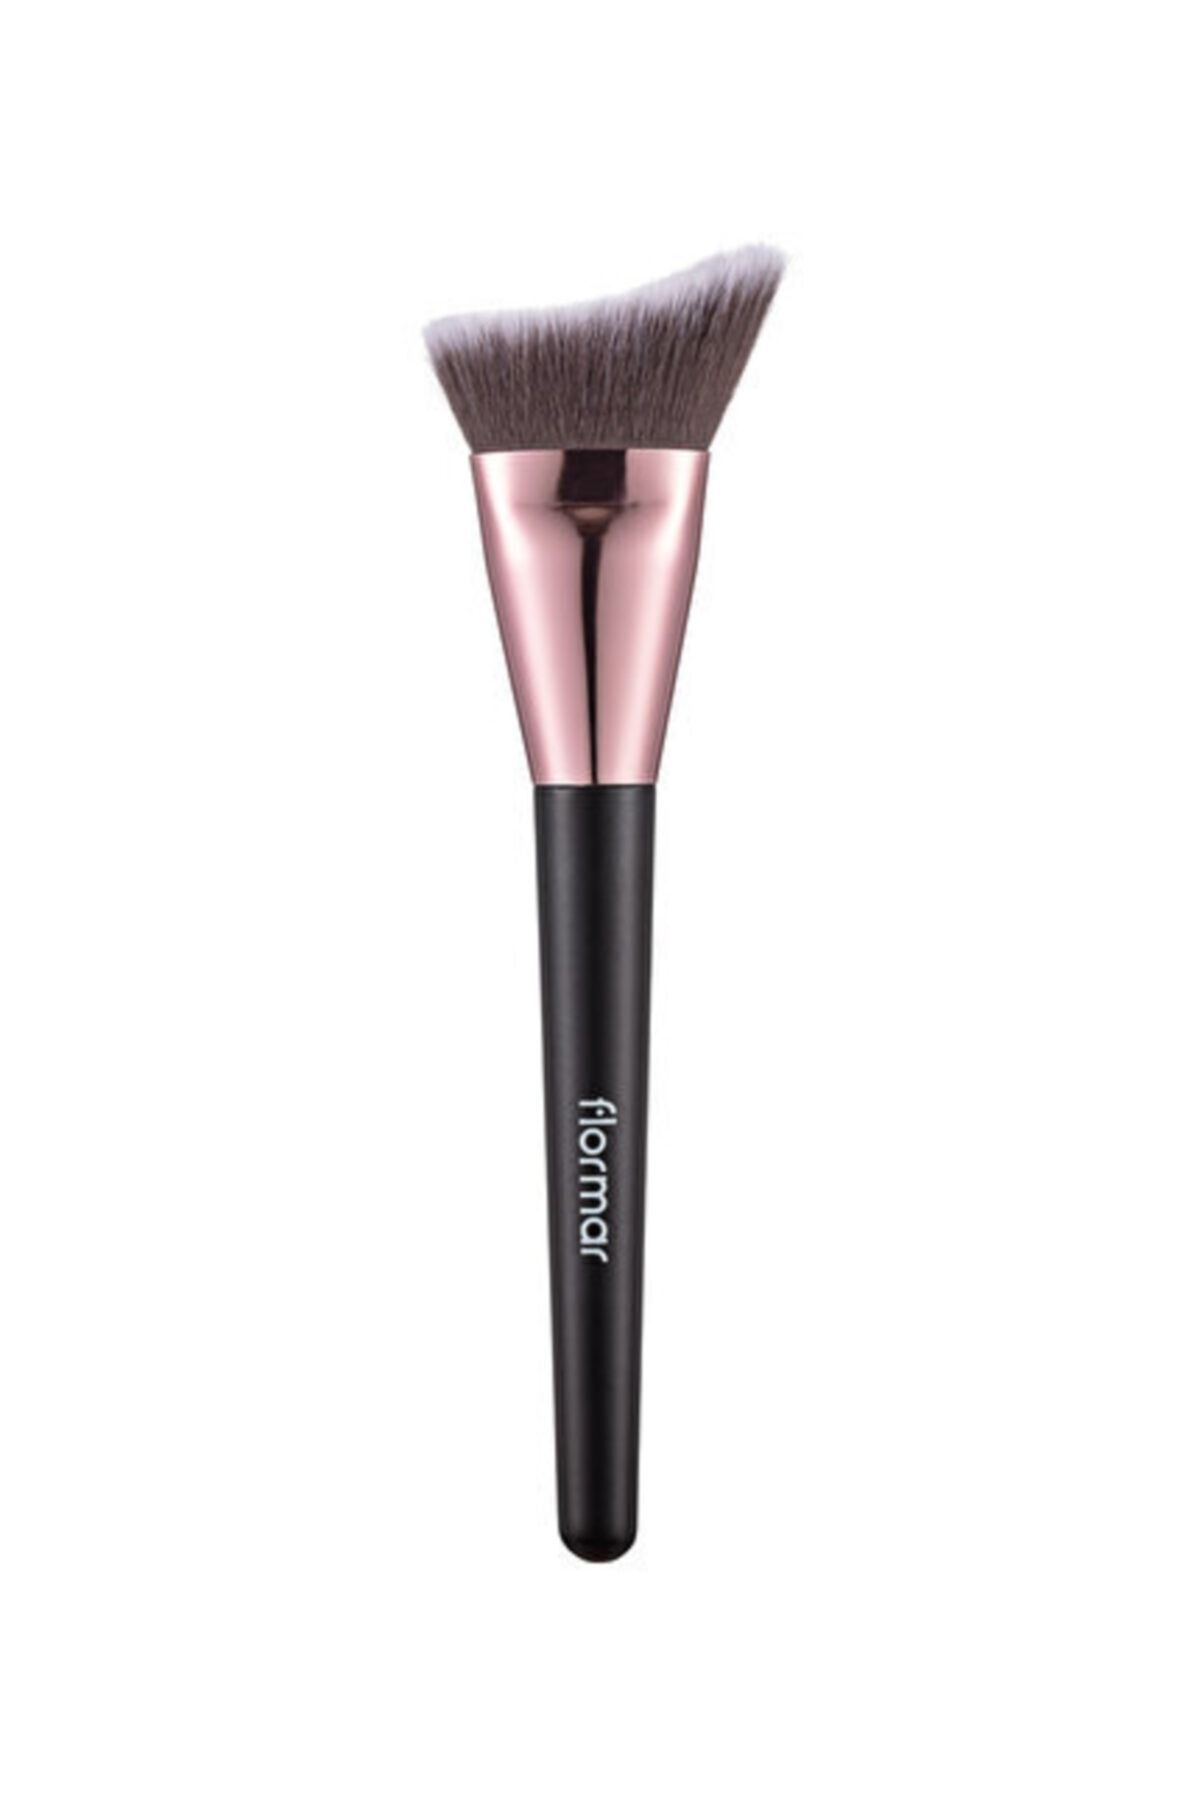 Flormar Contour Brush Pudra, Likit, Stick Ve Krem Kontür Uygulamalarında Kullanılan Makyaj Fırçası.